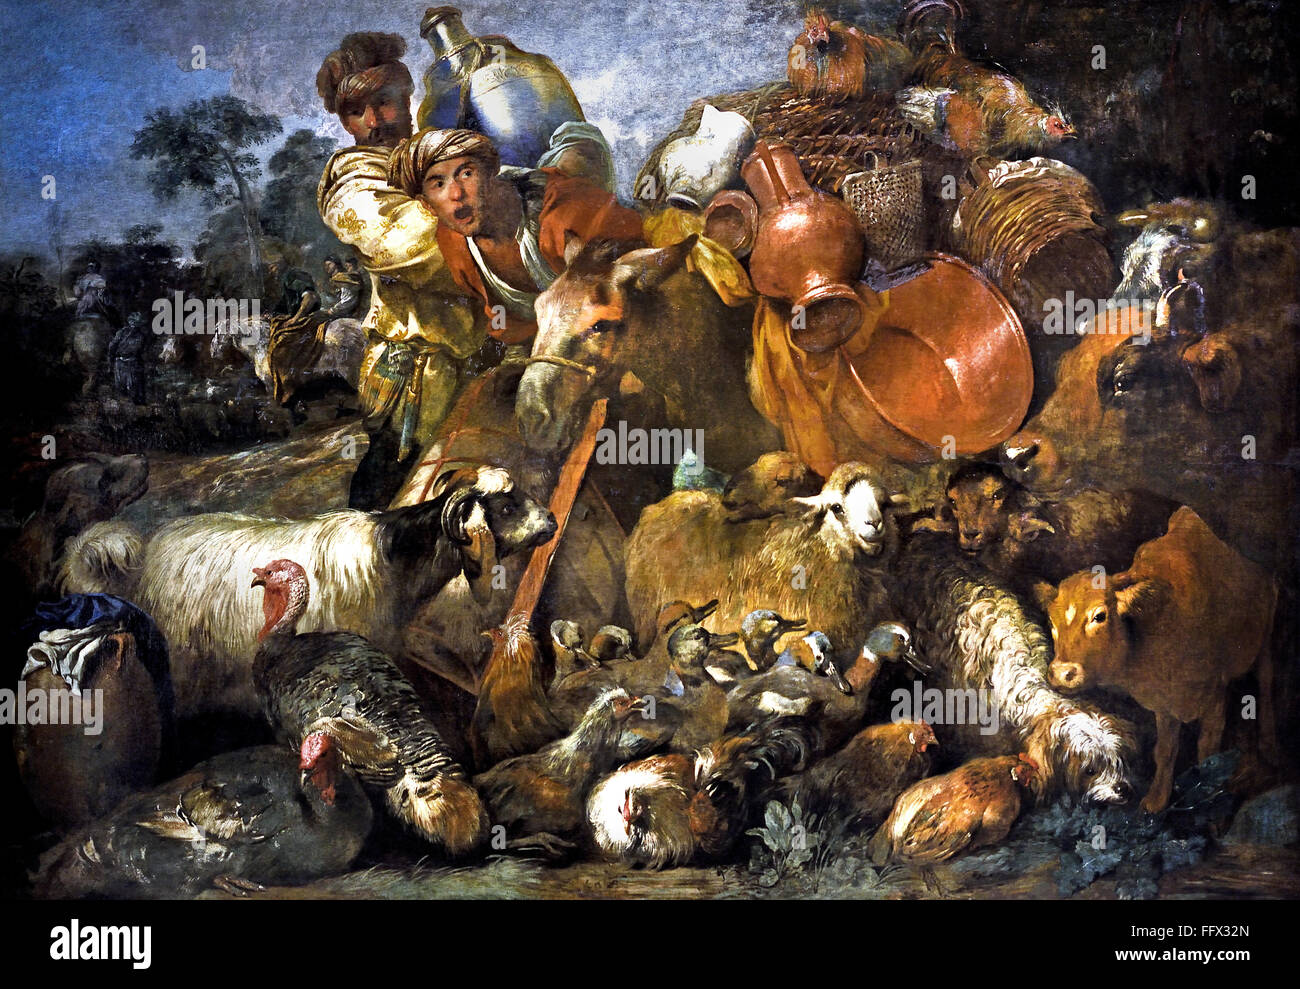 GIOVANNI BENEDETTO CASTIGLIONE (1616 - 1670) CARAVANE 1635 Italie Italien ici le sujet pourrait bien être le voyage de Jacob, de David ou même d'Abraham, accompagné de leur troupeau. Banque D'Images